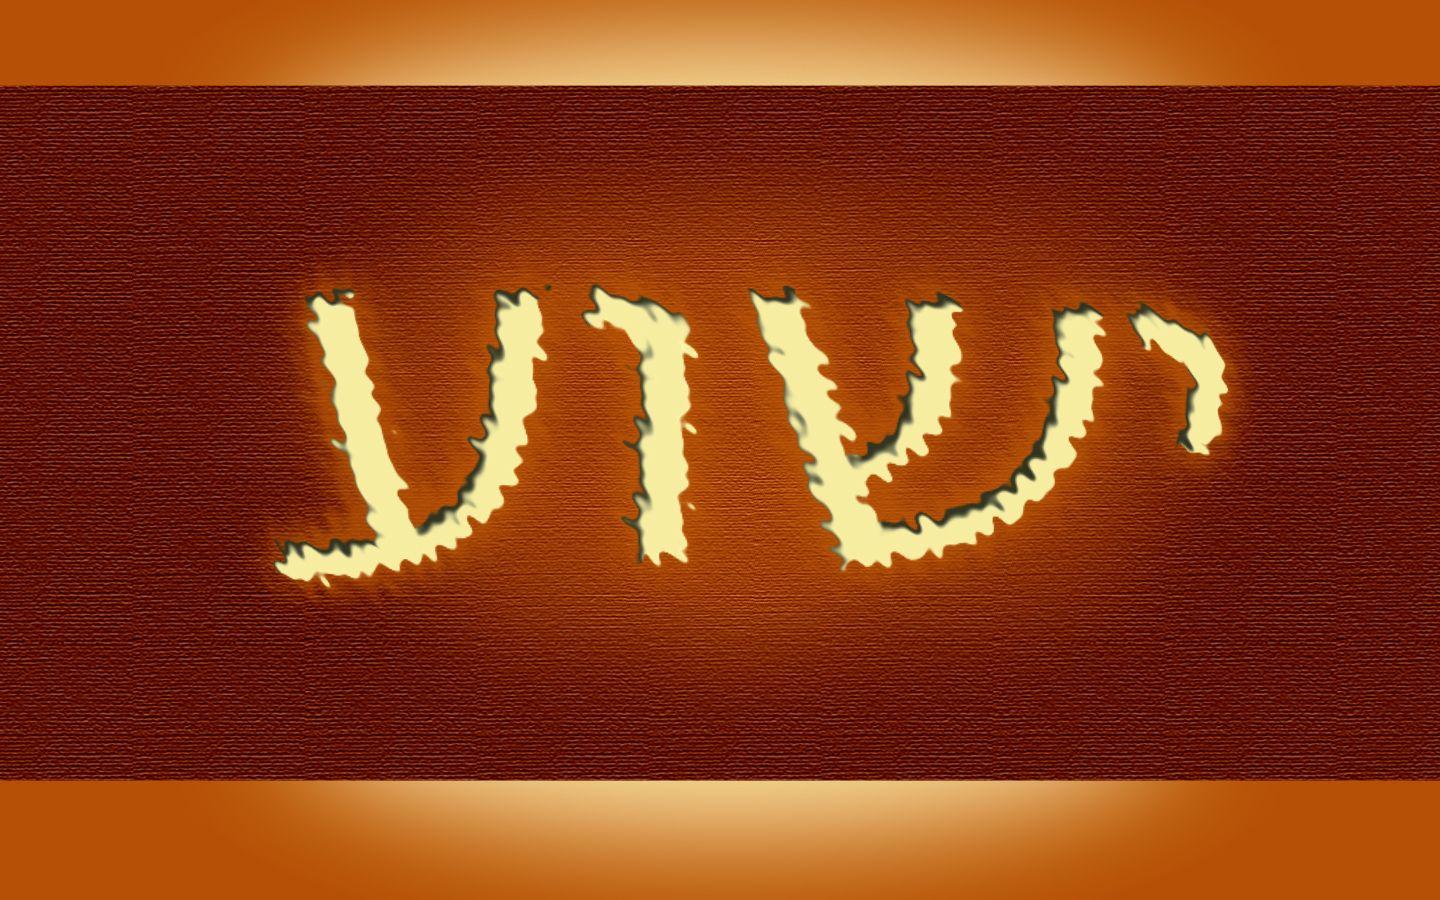 Hashem in Hebrew